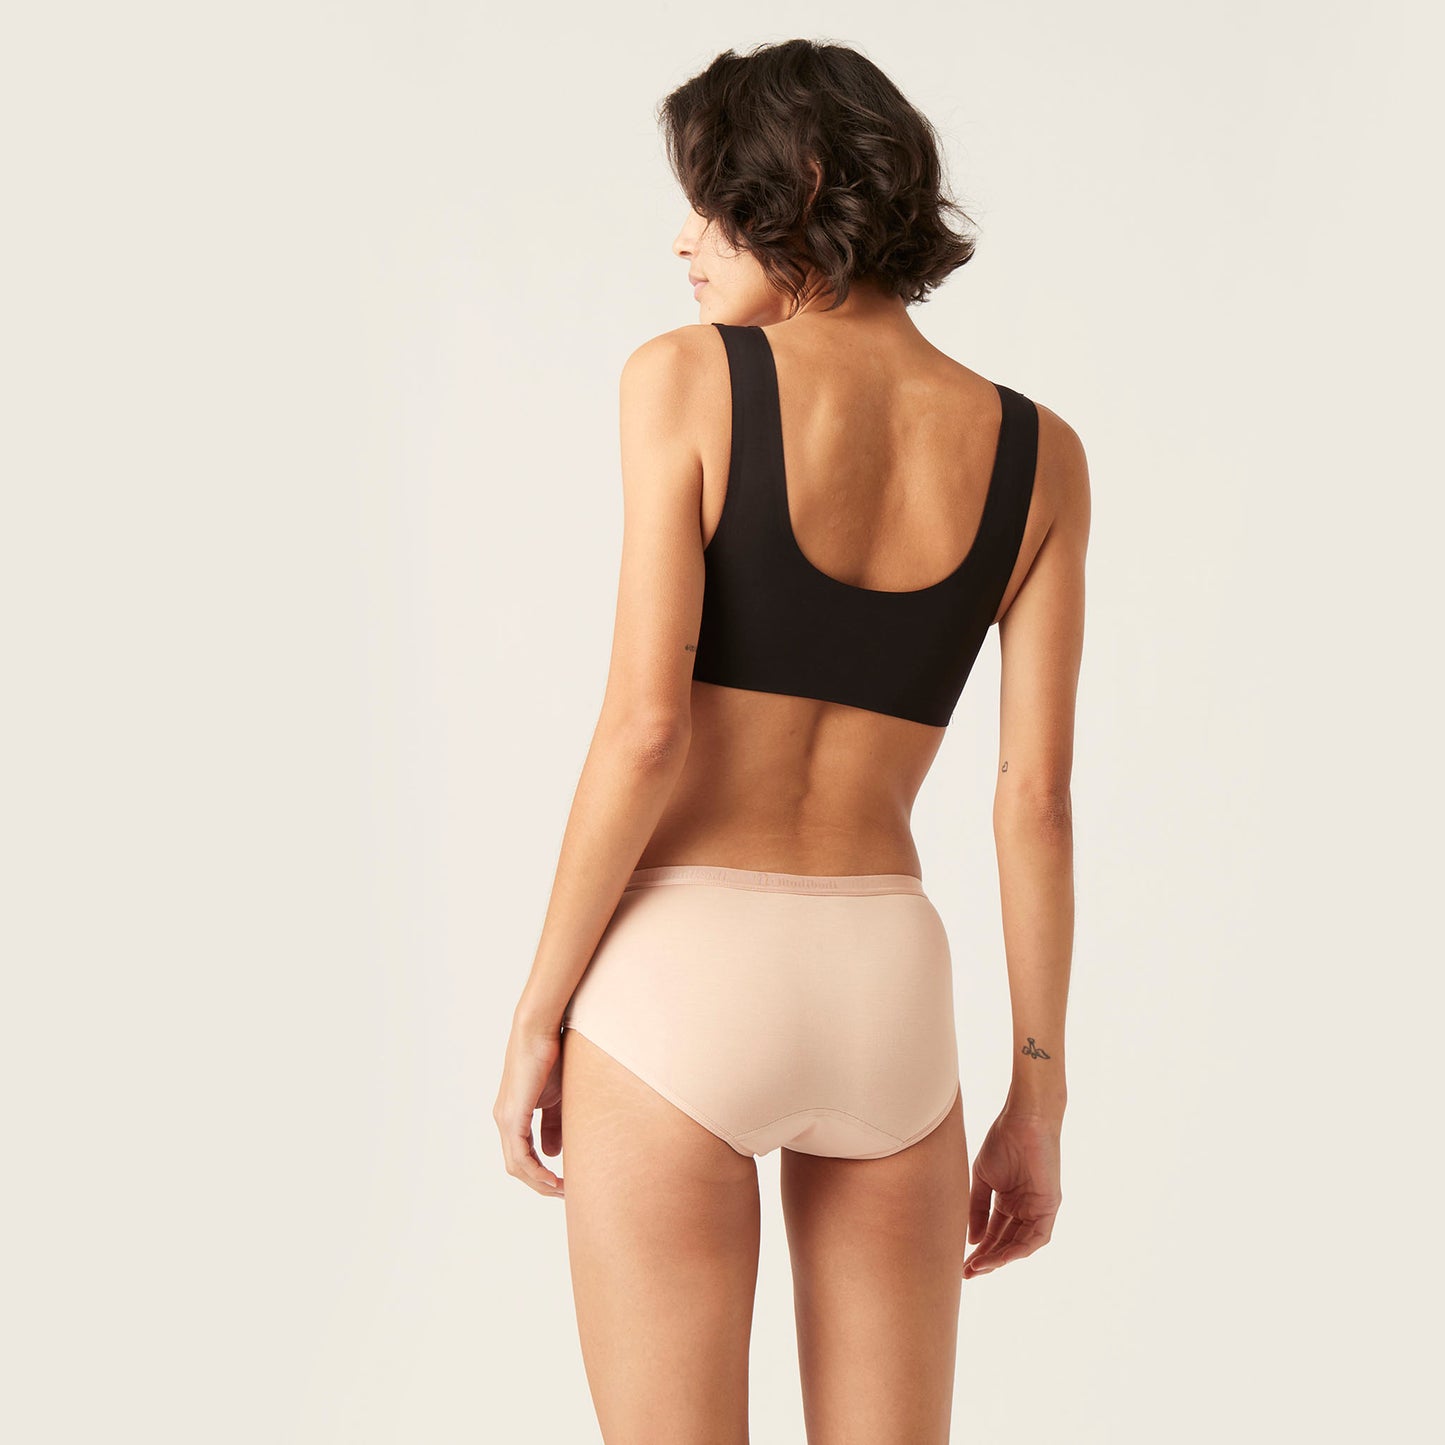 back view period underwear